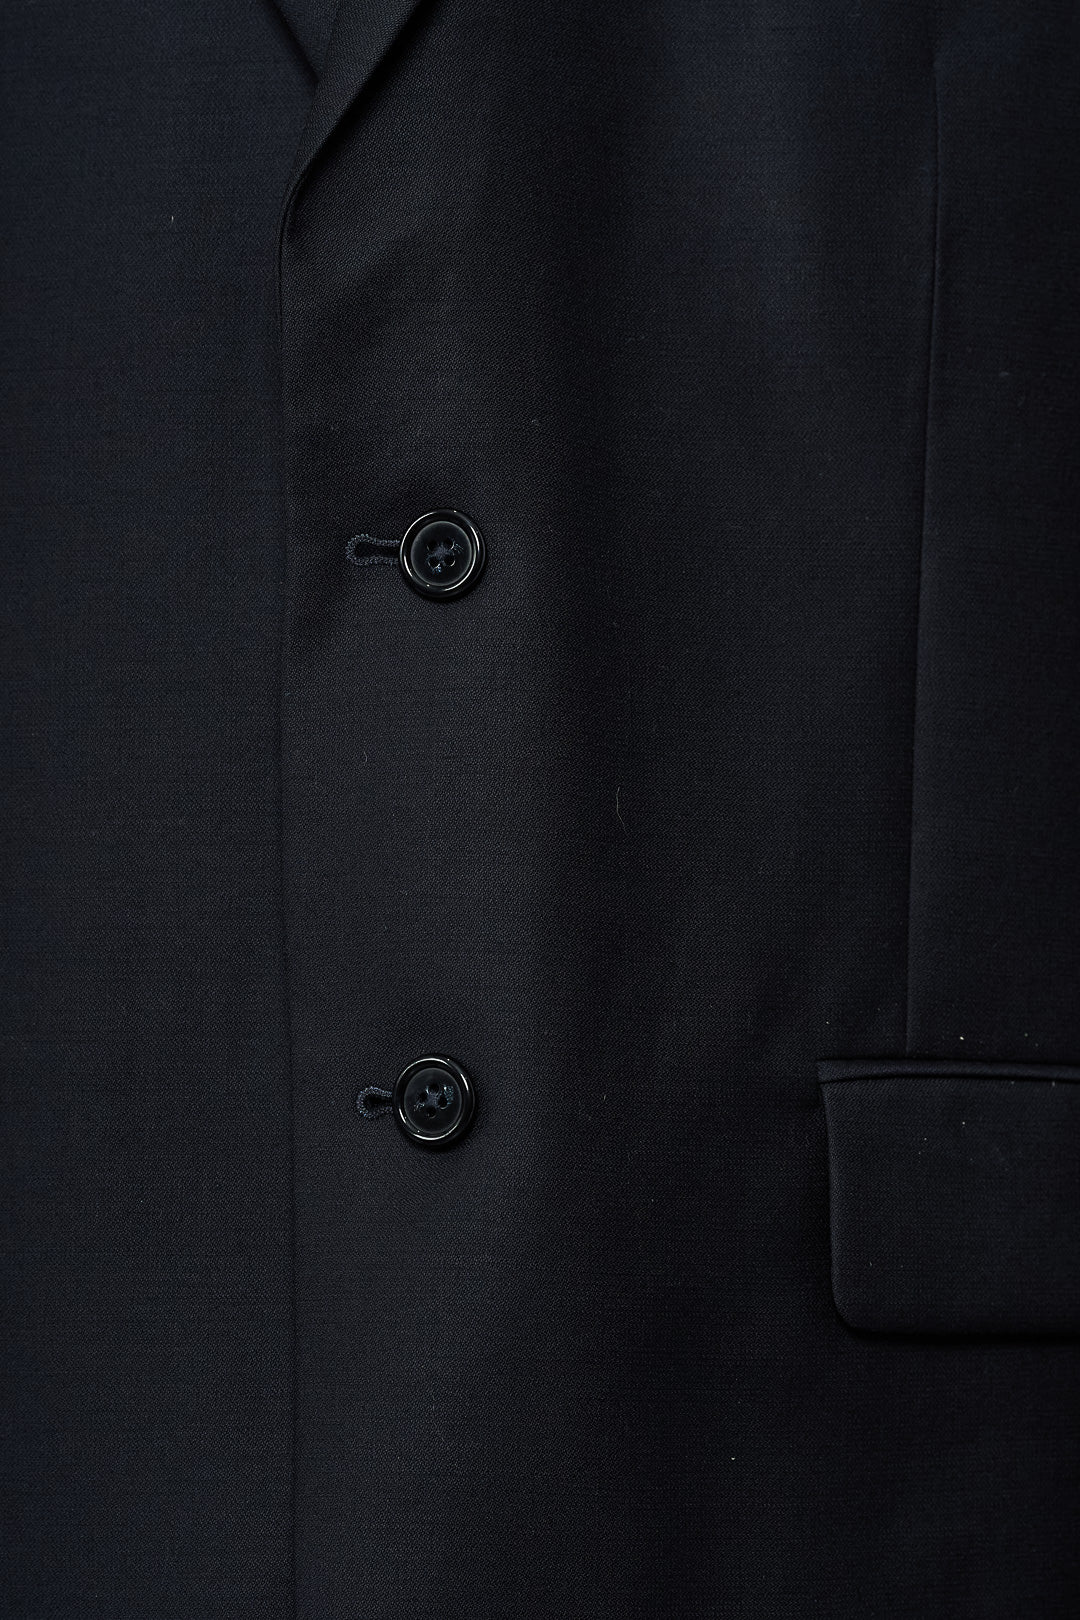 Plain Black Classic Suit